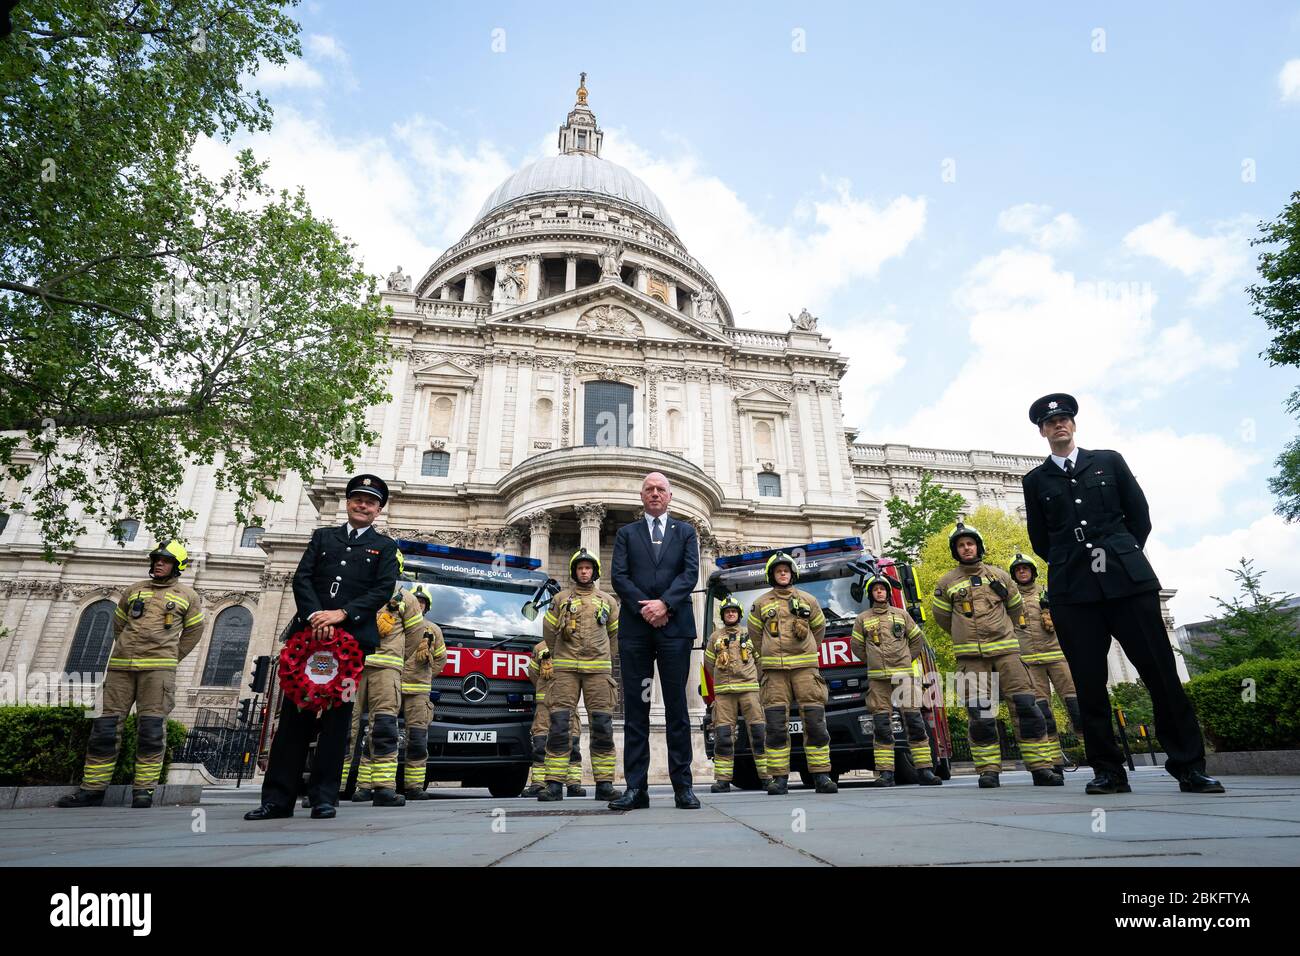 Mitglieder der London Fire Brigade am National Firefighters' Memorial in St. Pauls, London, in Erinnerung an die Feuerwehrleute, die ihr Leben in der Dienstlinie verloren haben. Stockfoto